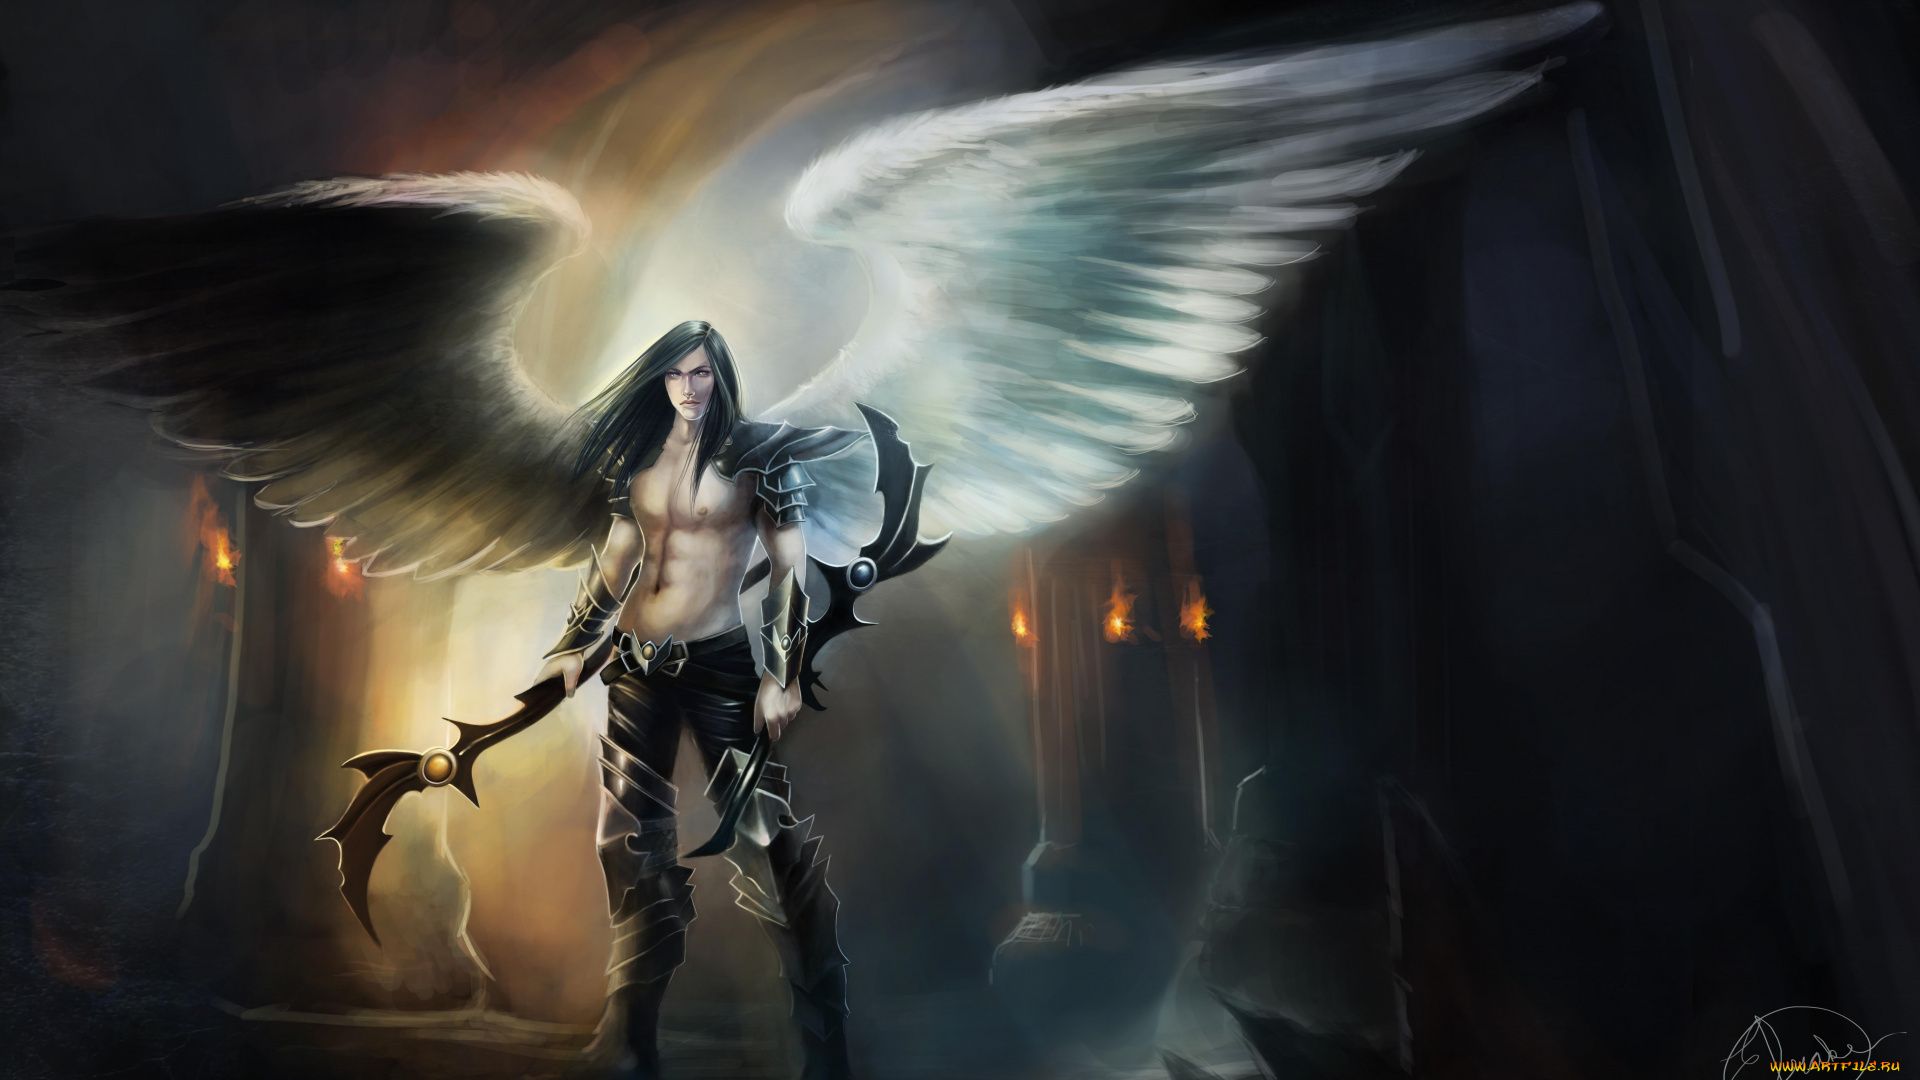 Images Of Fantasy Angels Men